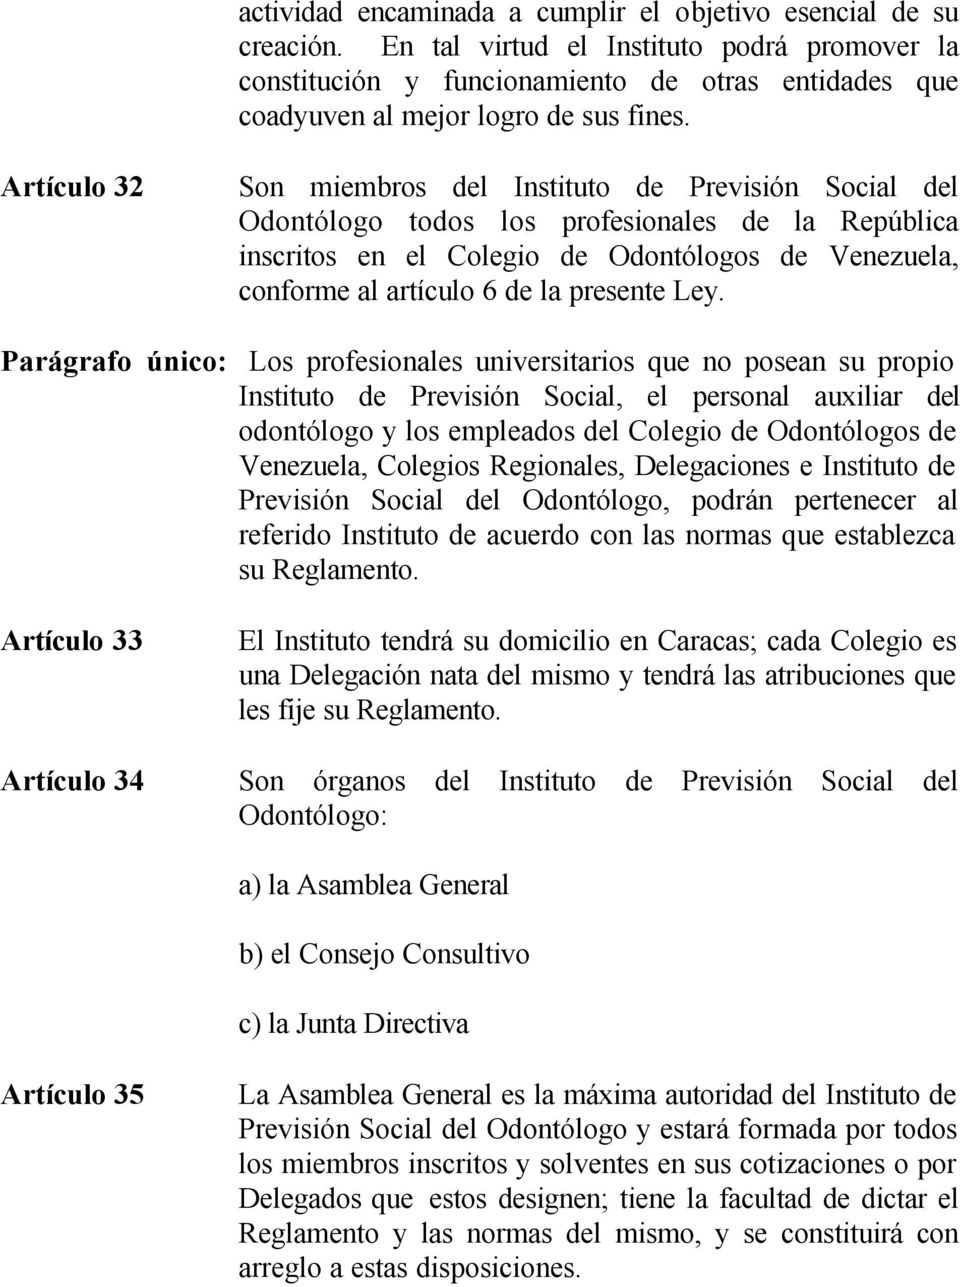 Artículo 32 Son miembros del Instituto de Previsión Social del Odontólogo todos los profesionales de la República inscritos en el Colegio de Odontólogos de Venezuela, conforme al artículo 6 de la